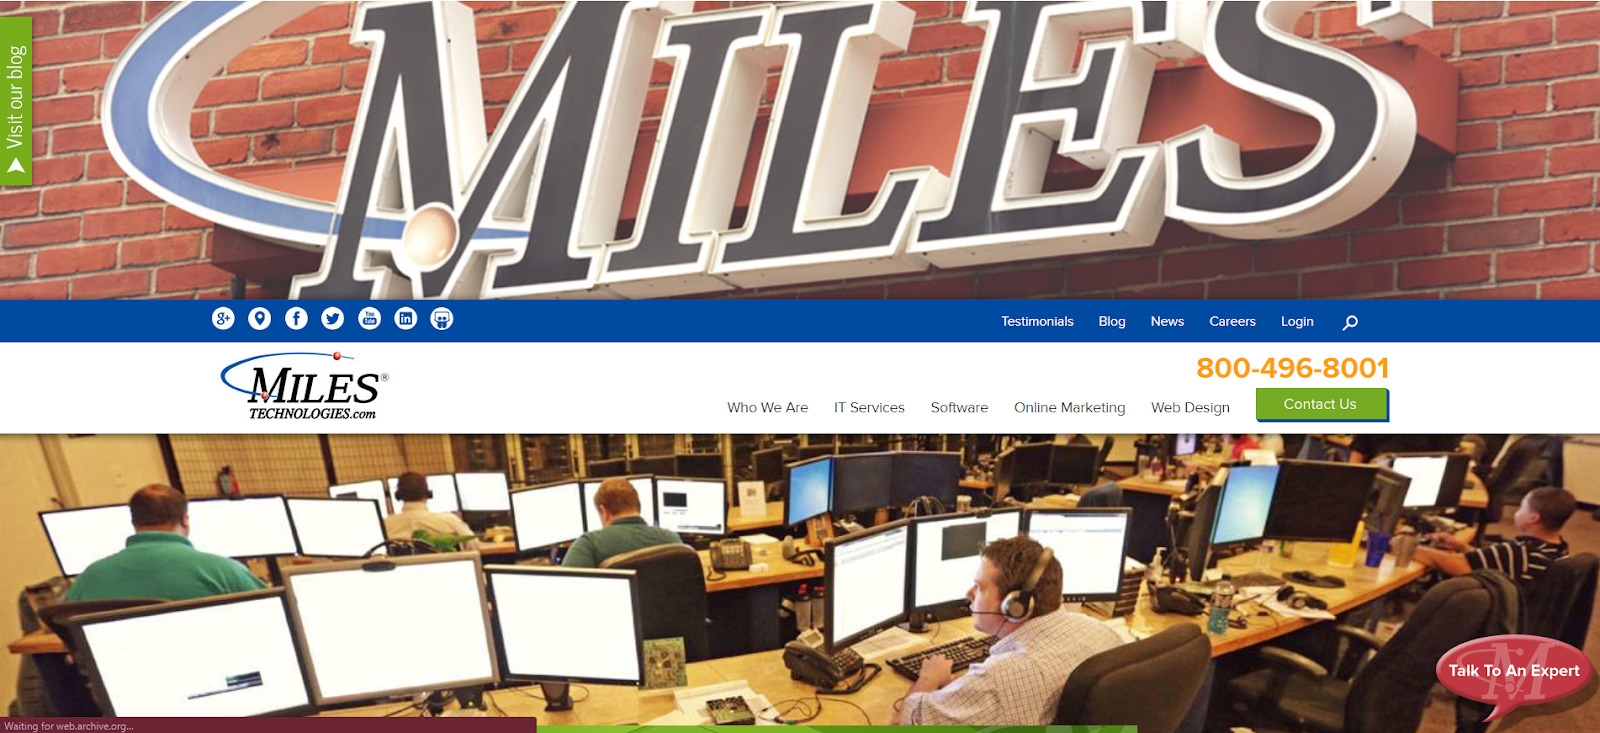 Miles Technologies website in 2014